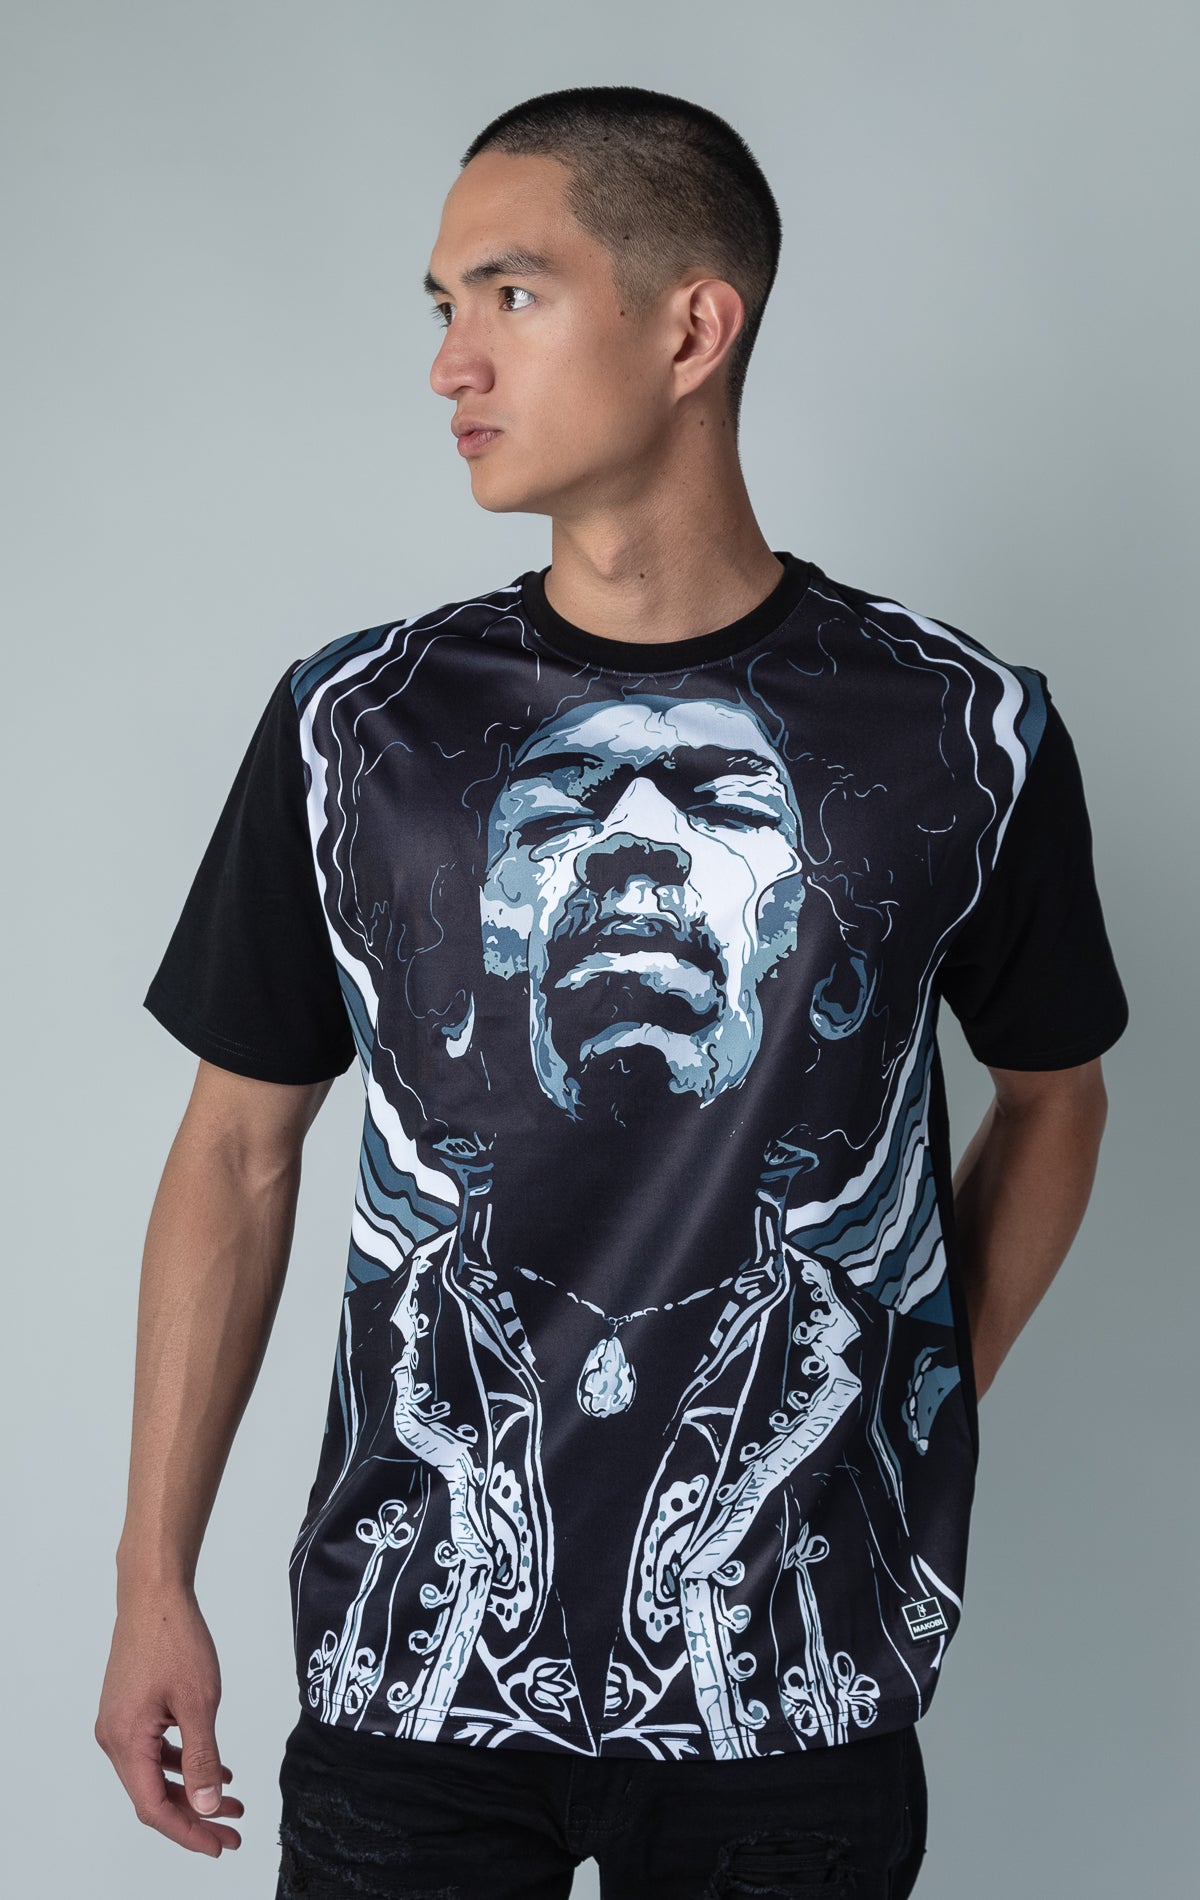 Jimmi Hendrix fan art shirt